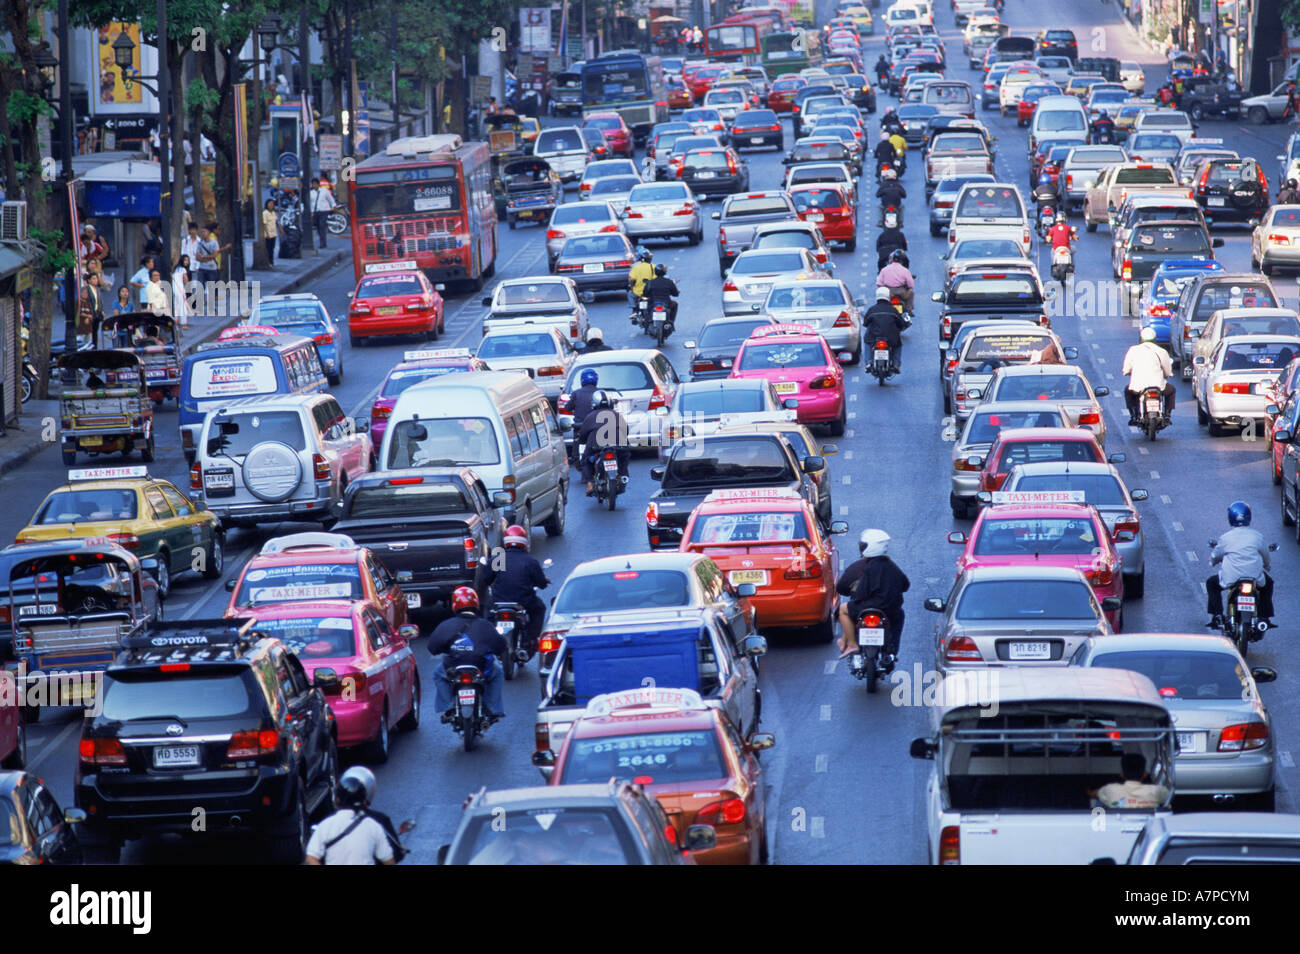 Tailandia, Bangkok, atasco de tráfico Foto de stock